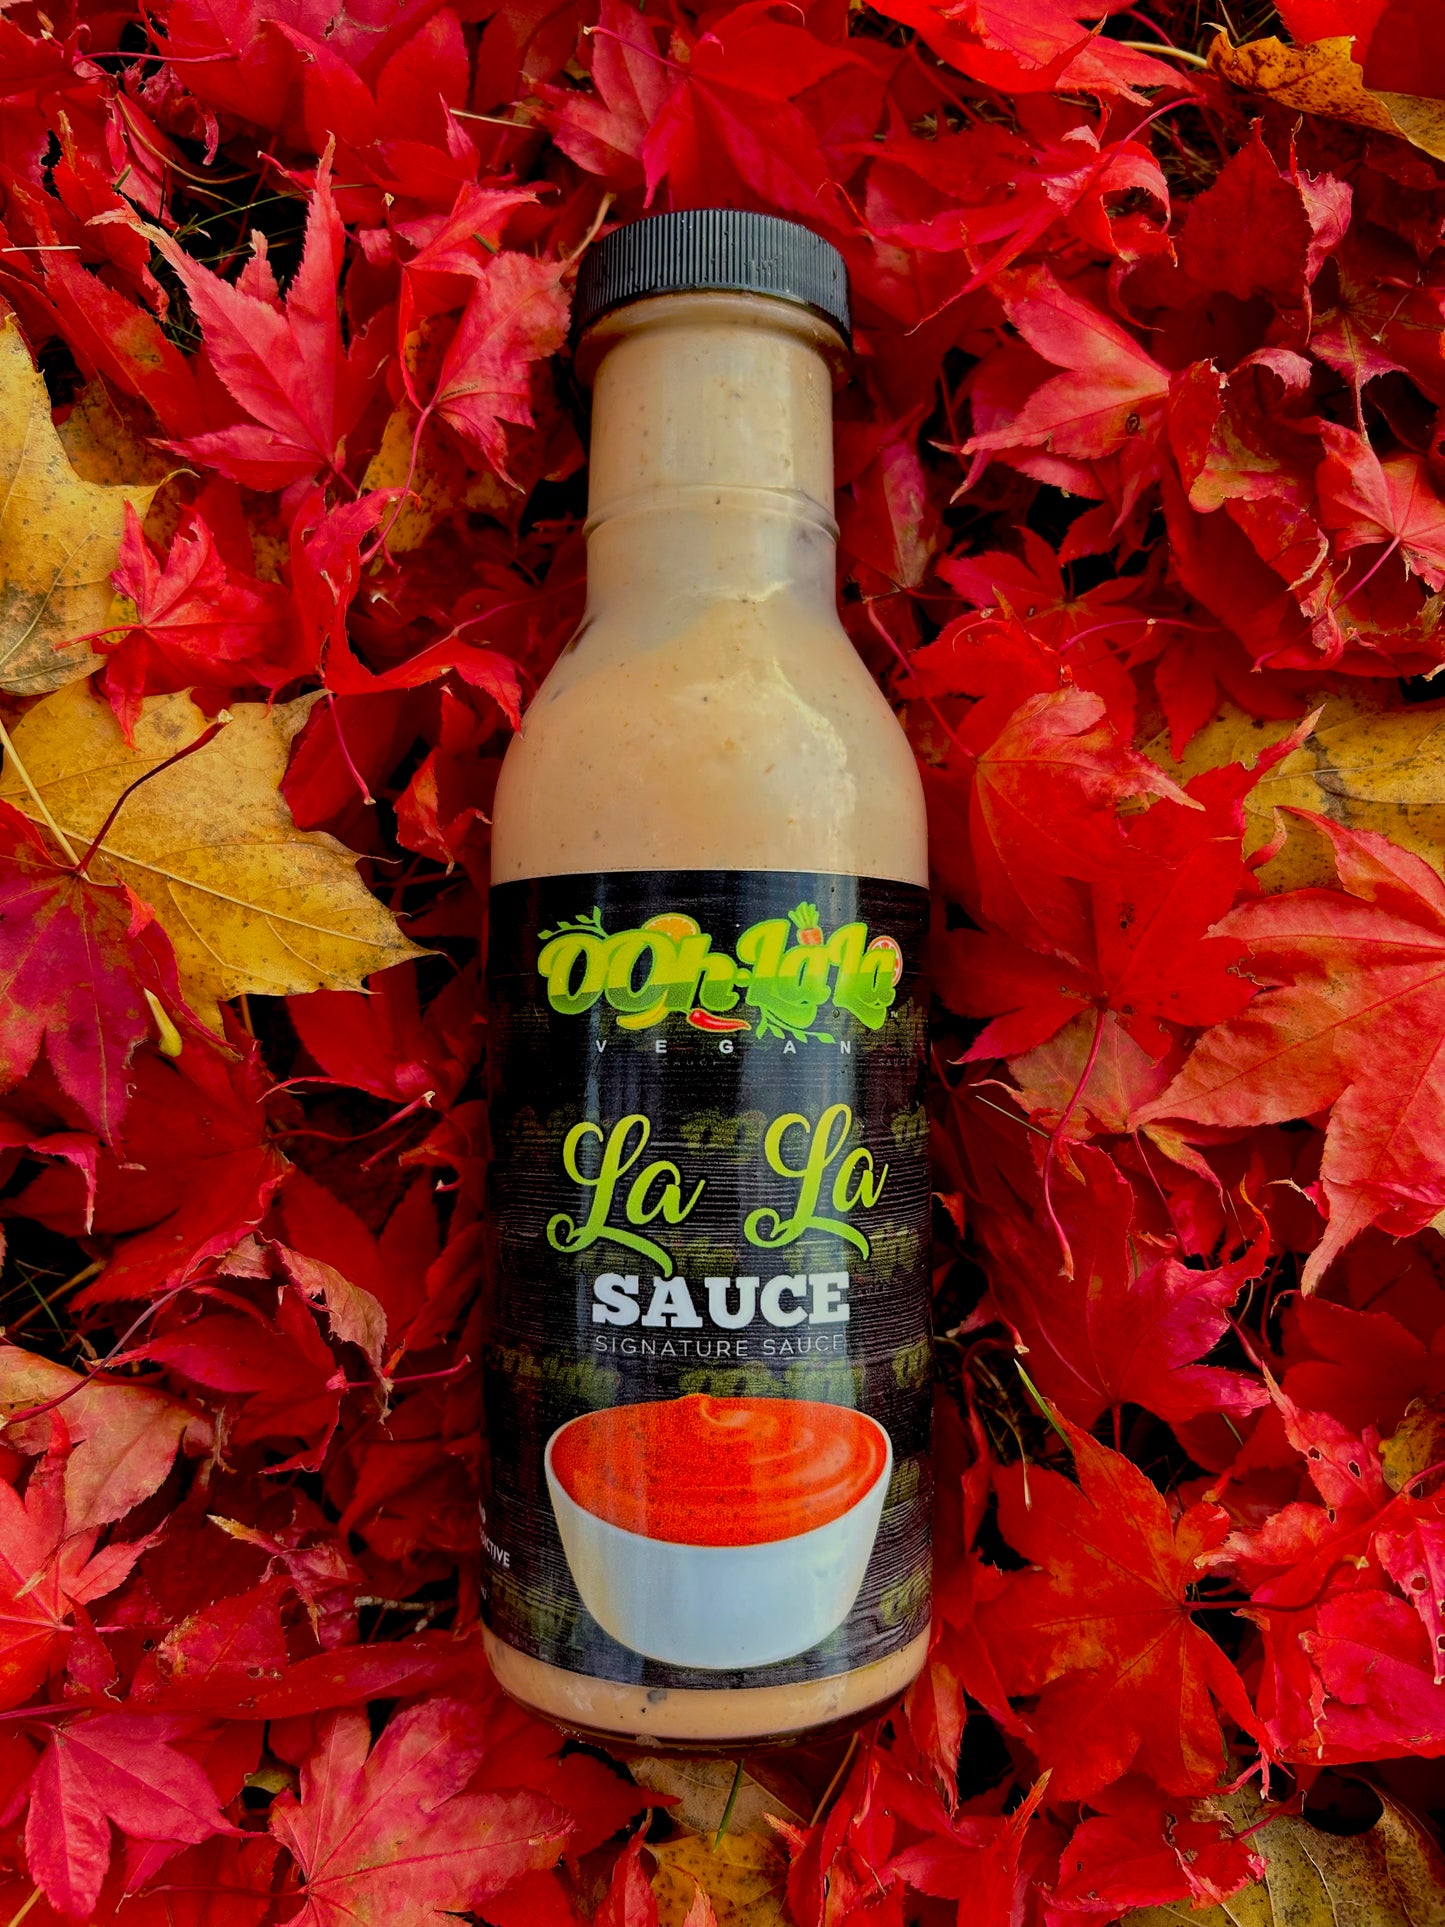 La La Sauce | All Purpose Dipping Sauce